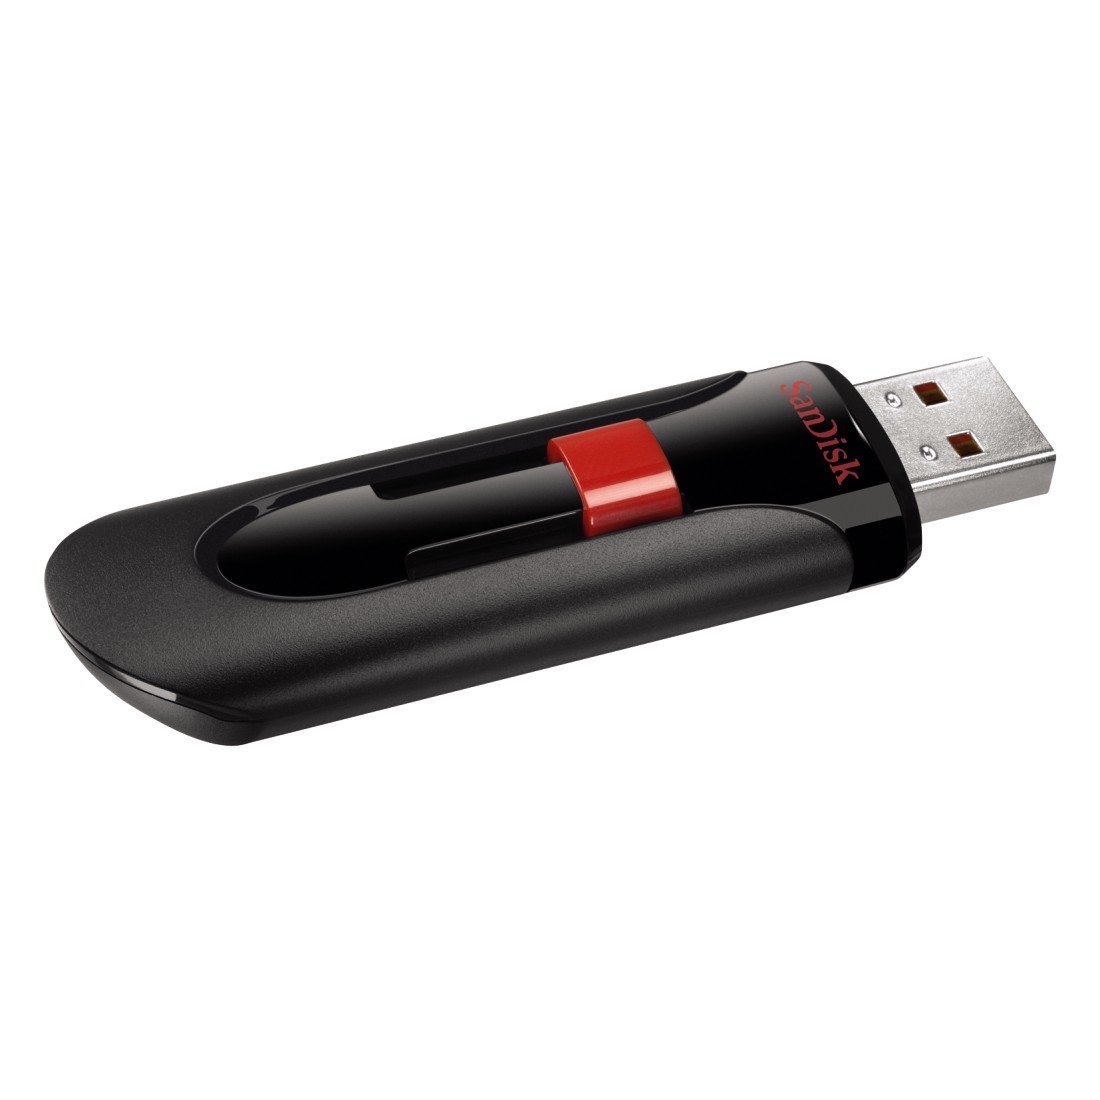 Retractable USB Flash Drive - 16 GB | Advantage Software